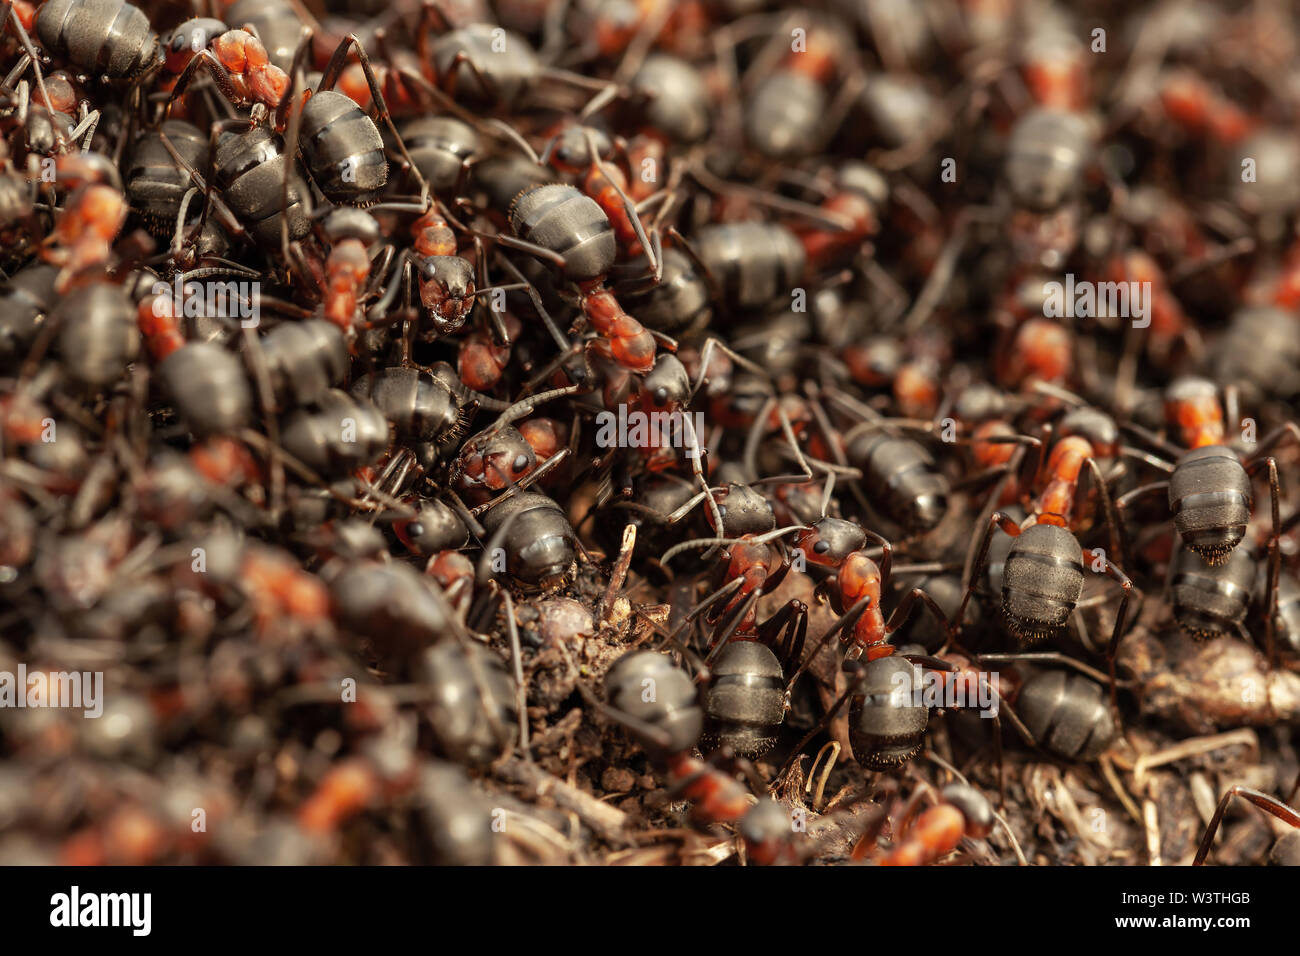 Ants colony Stock Photo